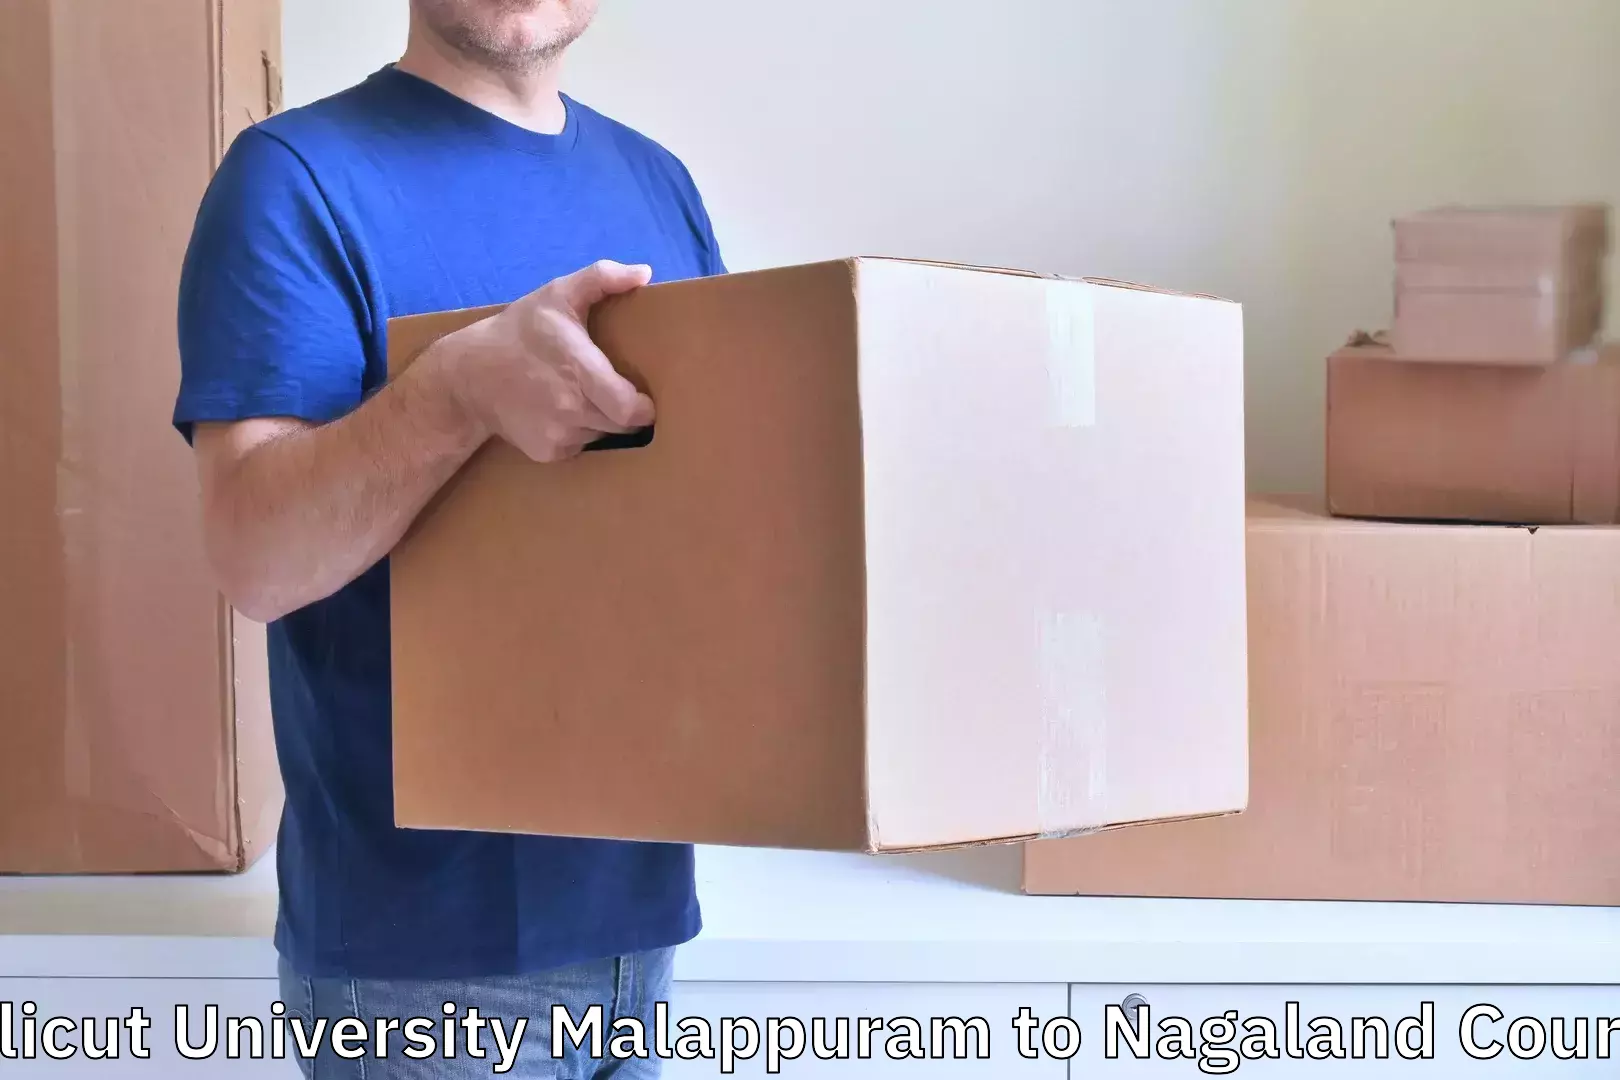 Luggage shipment tracking Calicut University Malappuram to Nagaland